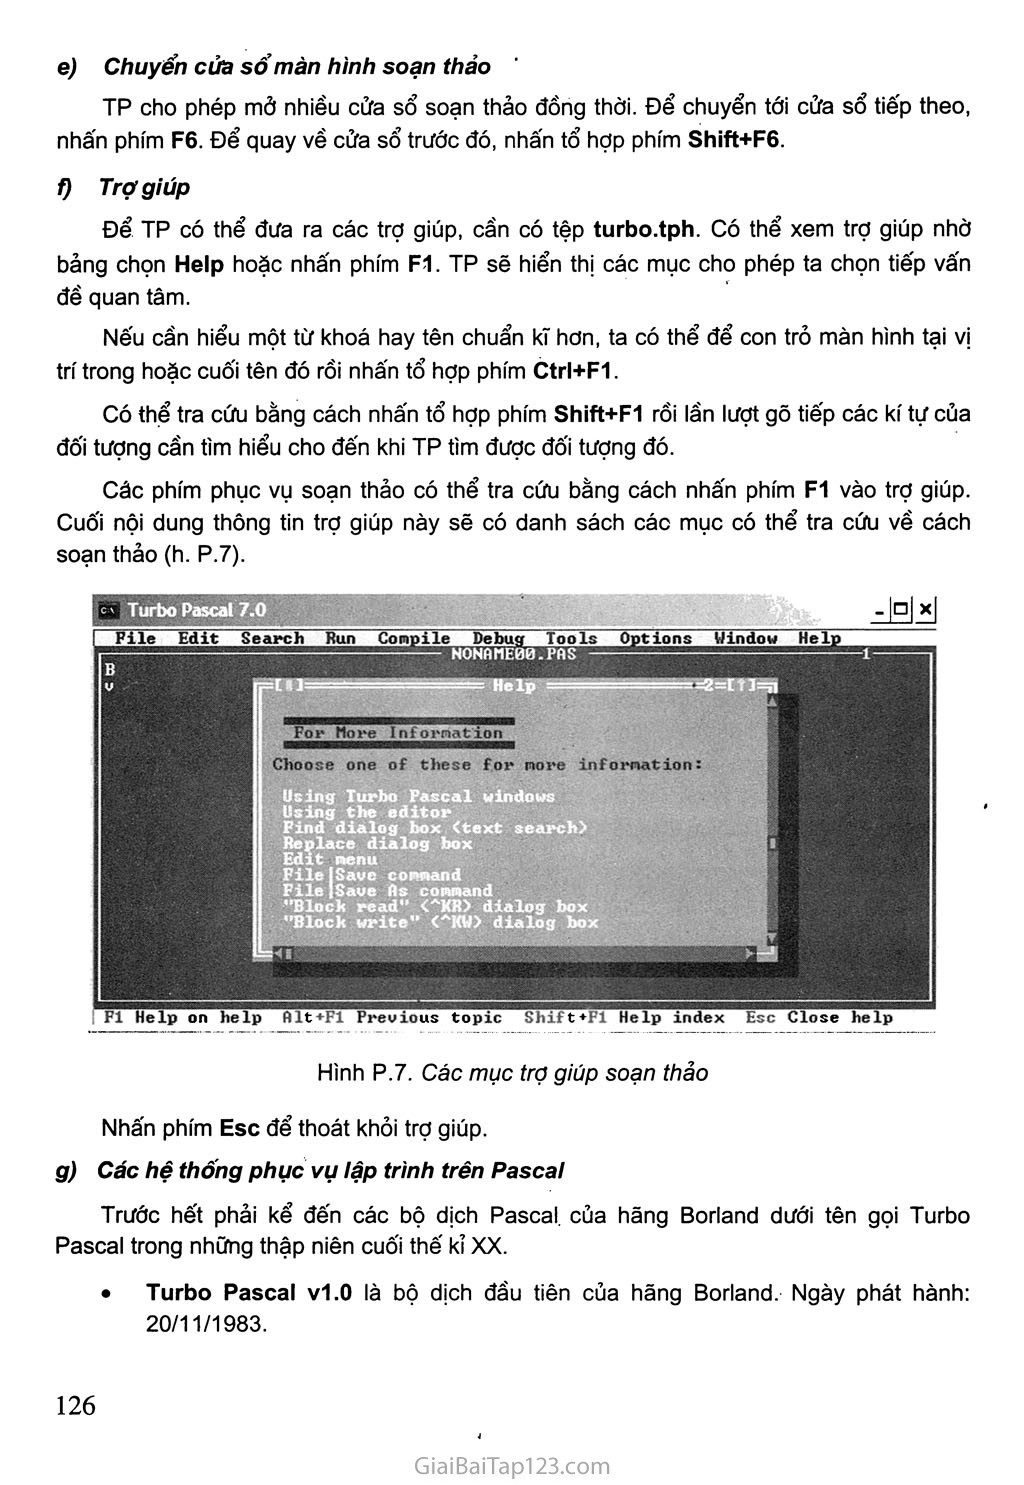 1. Môi trường Turbo Pascal trang 5